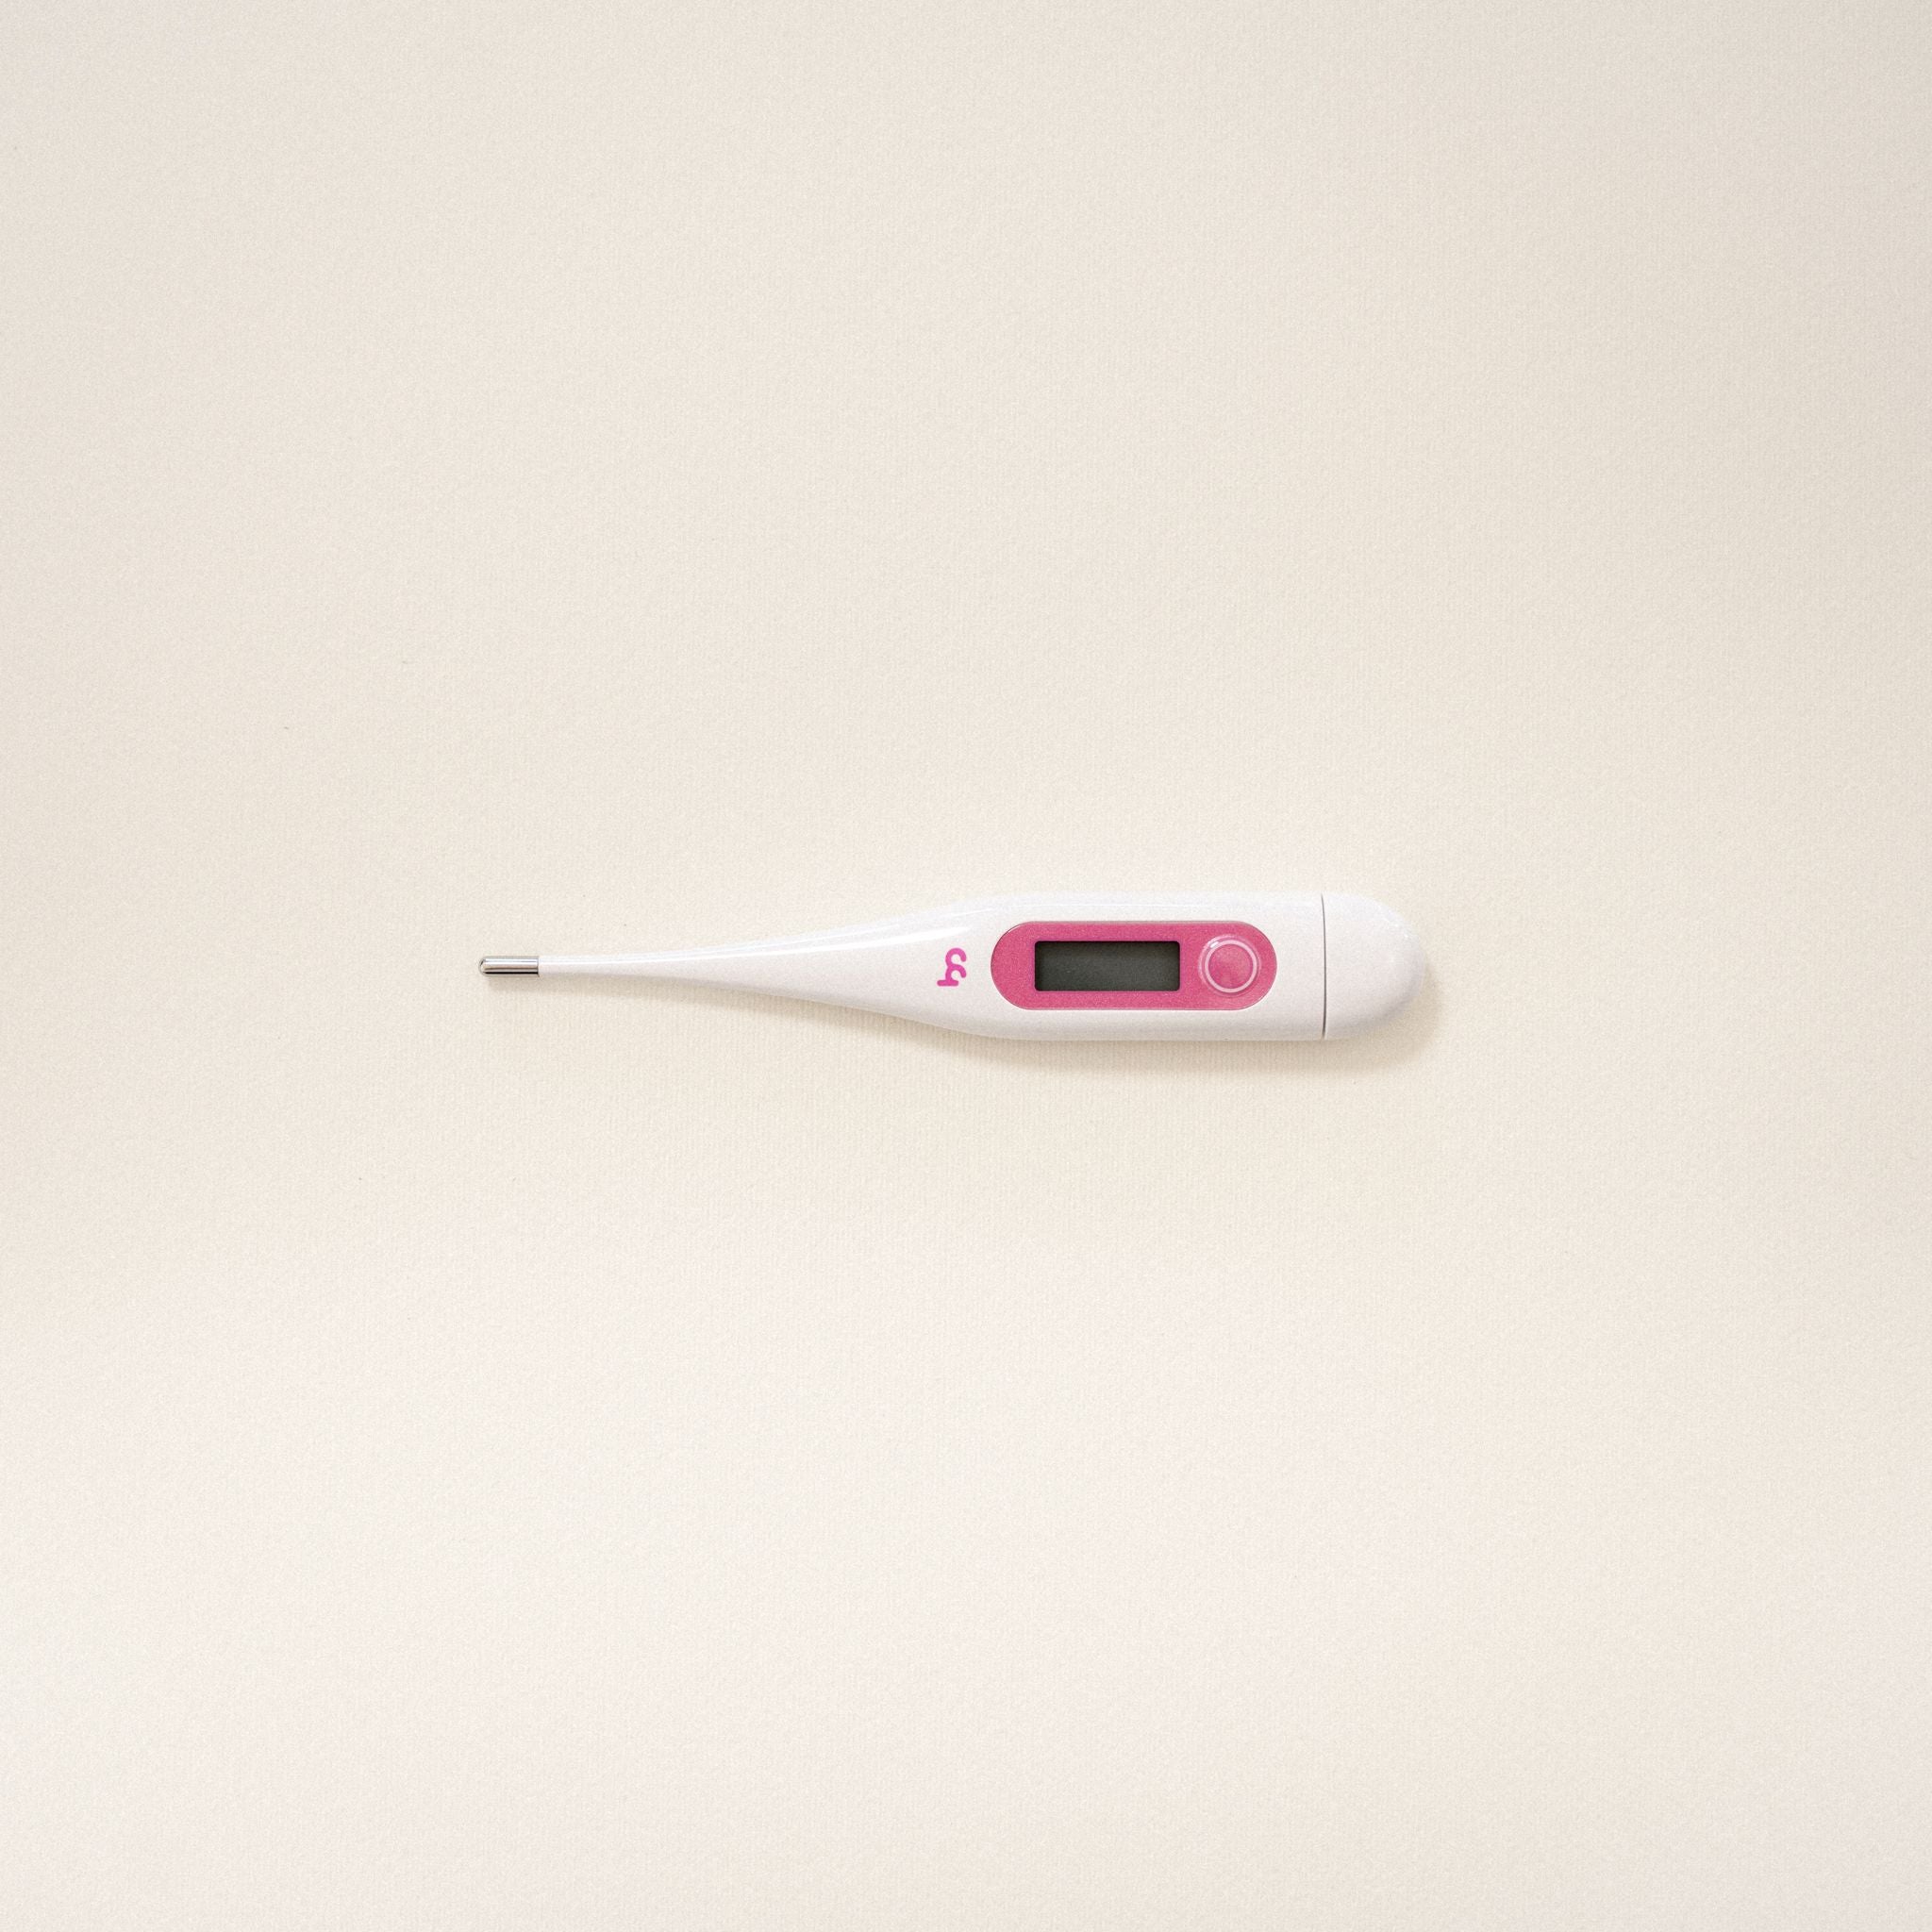 Valmed Ovulation Midstream Test. 10 pcs. + Valmed Pregnancy Midstream Test. 2 pcs. + Valmed Thermometer